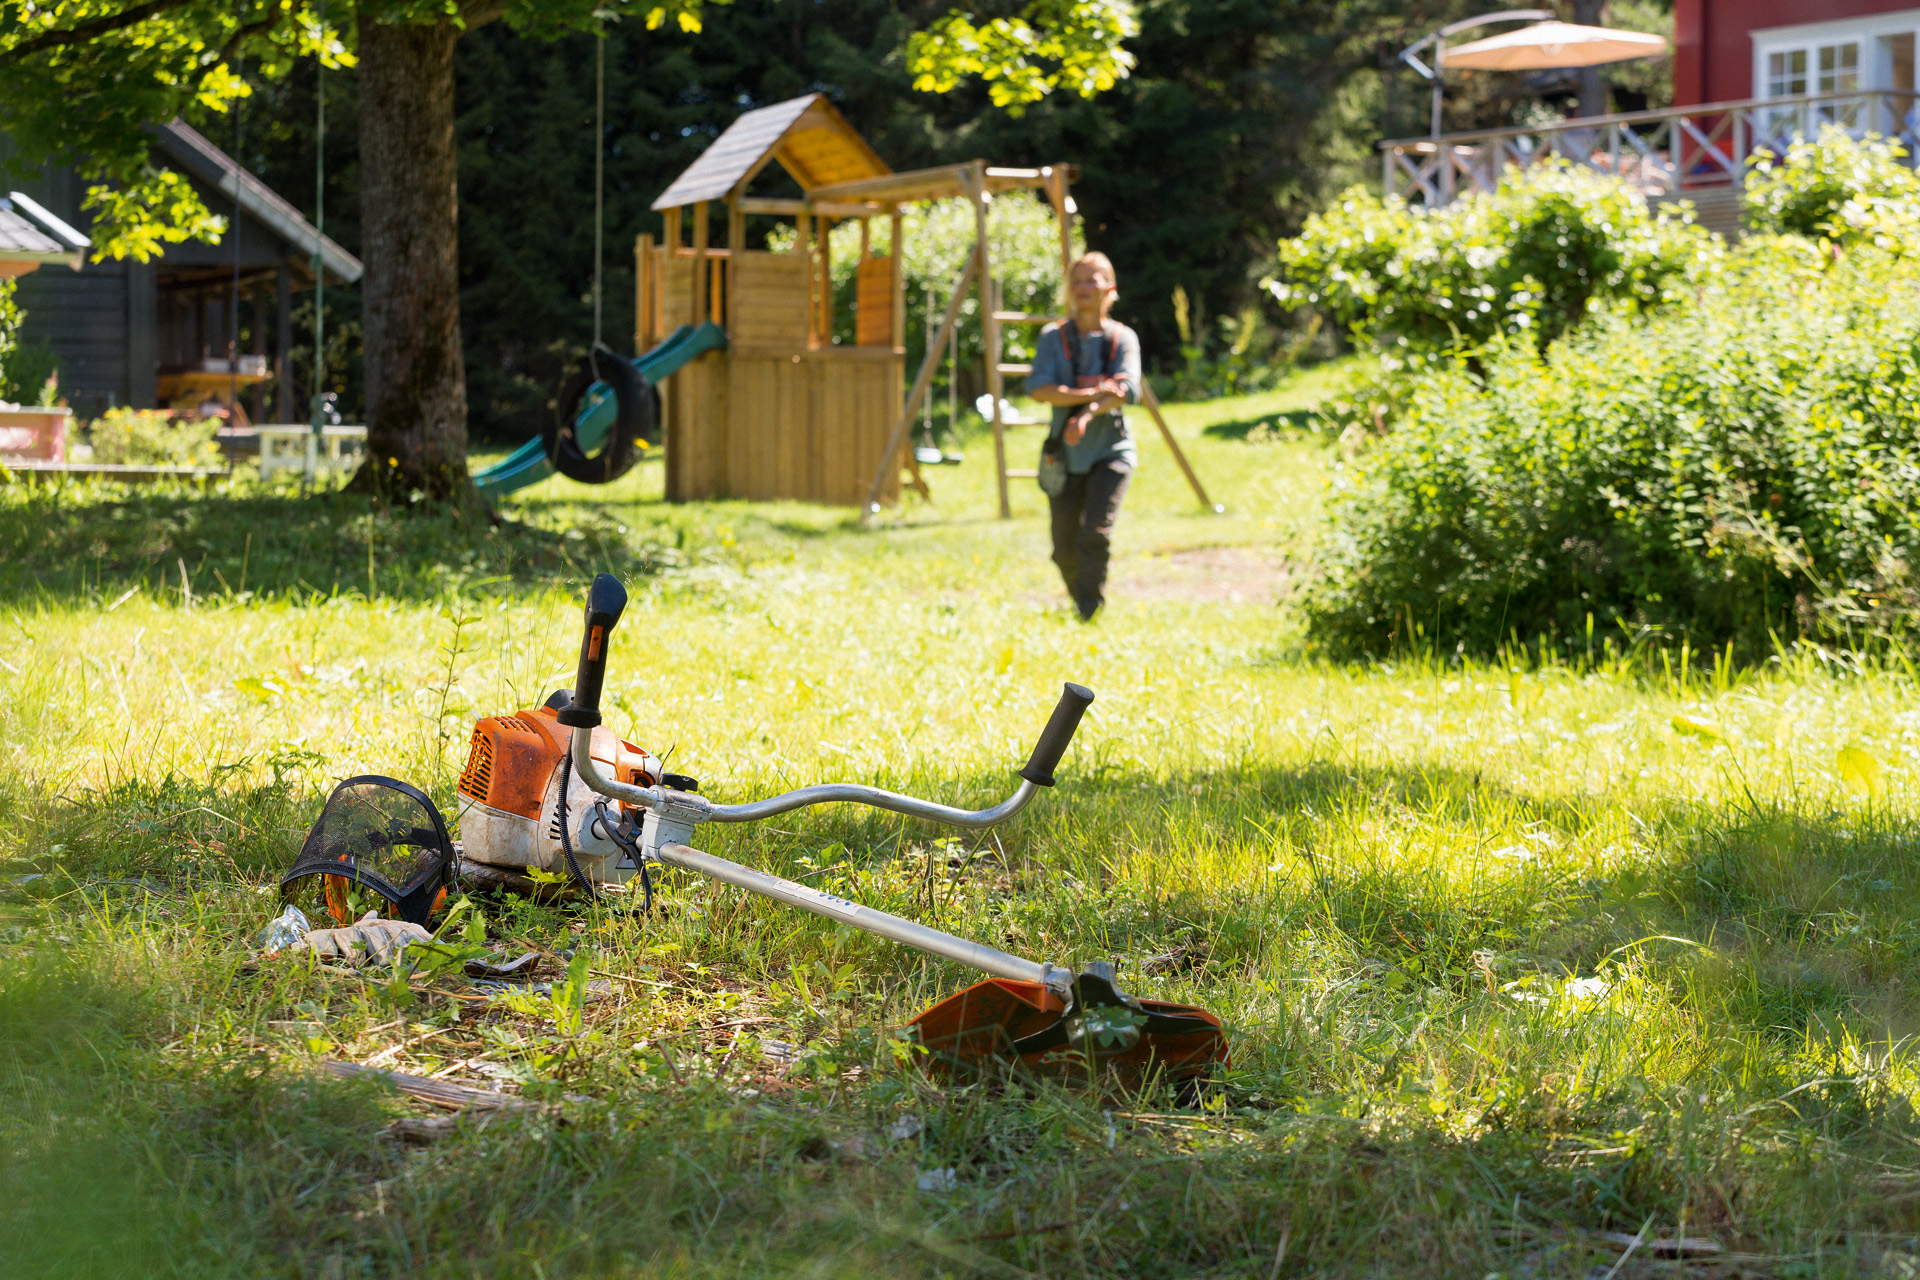 En STIHL FS 240 ryddesag i gress, foran en mann som gjør seg klar til å vedlikeholde den